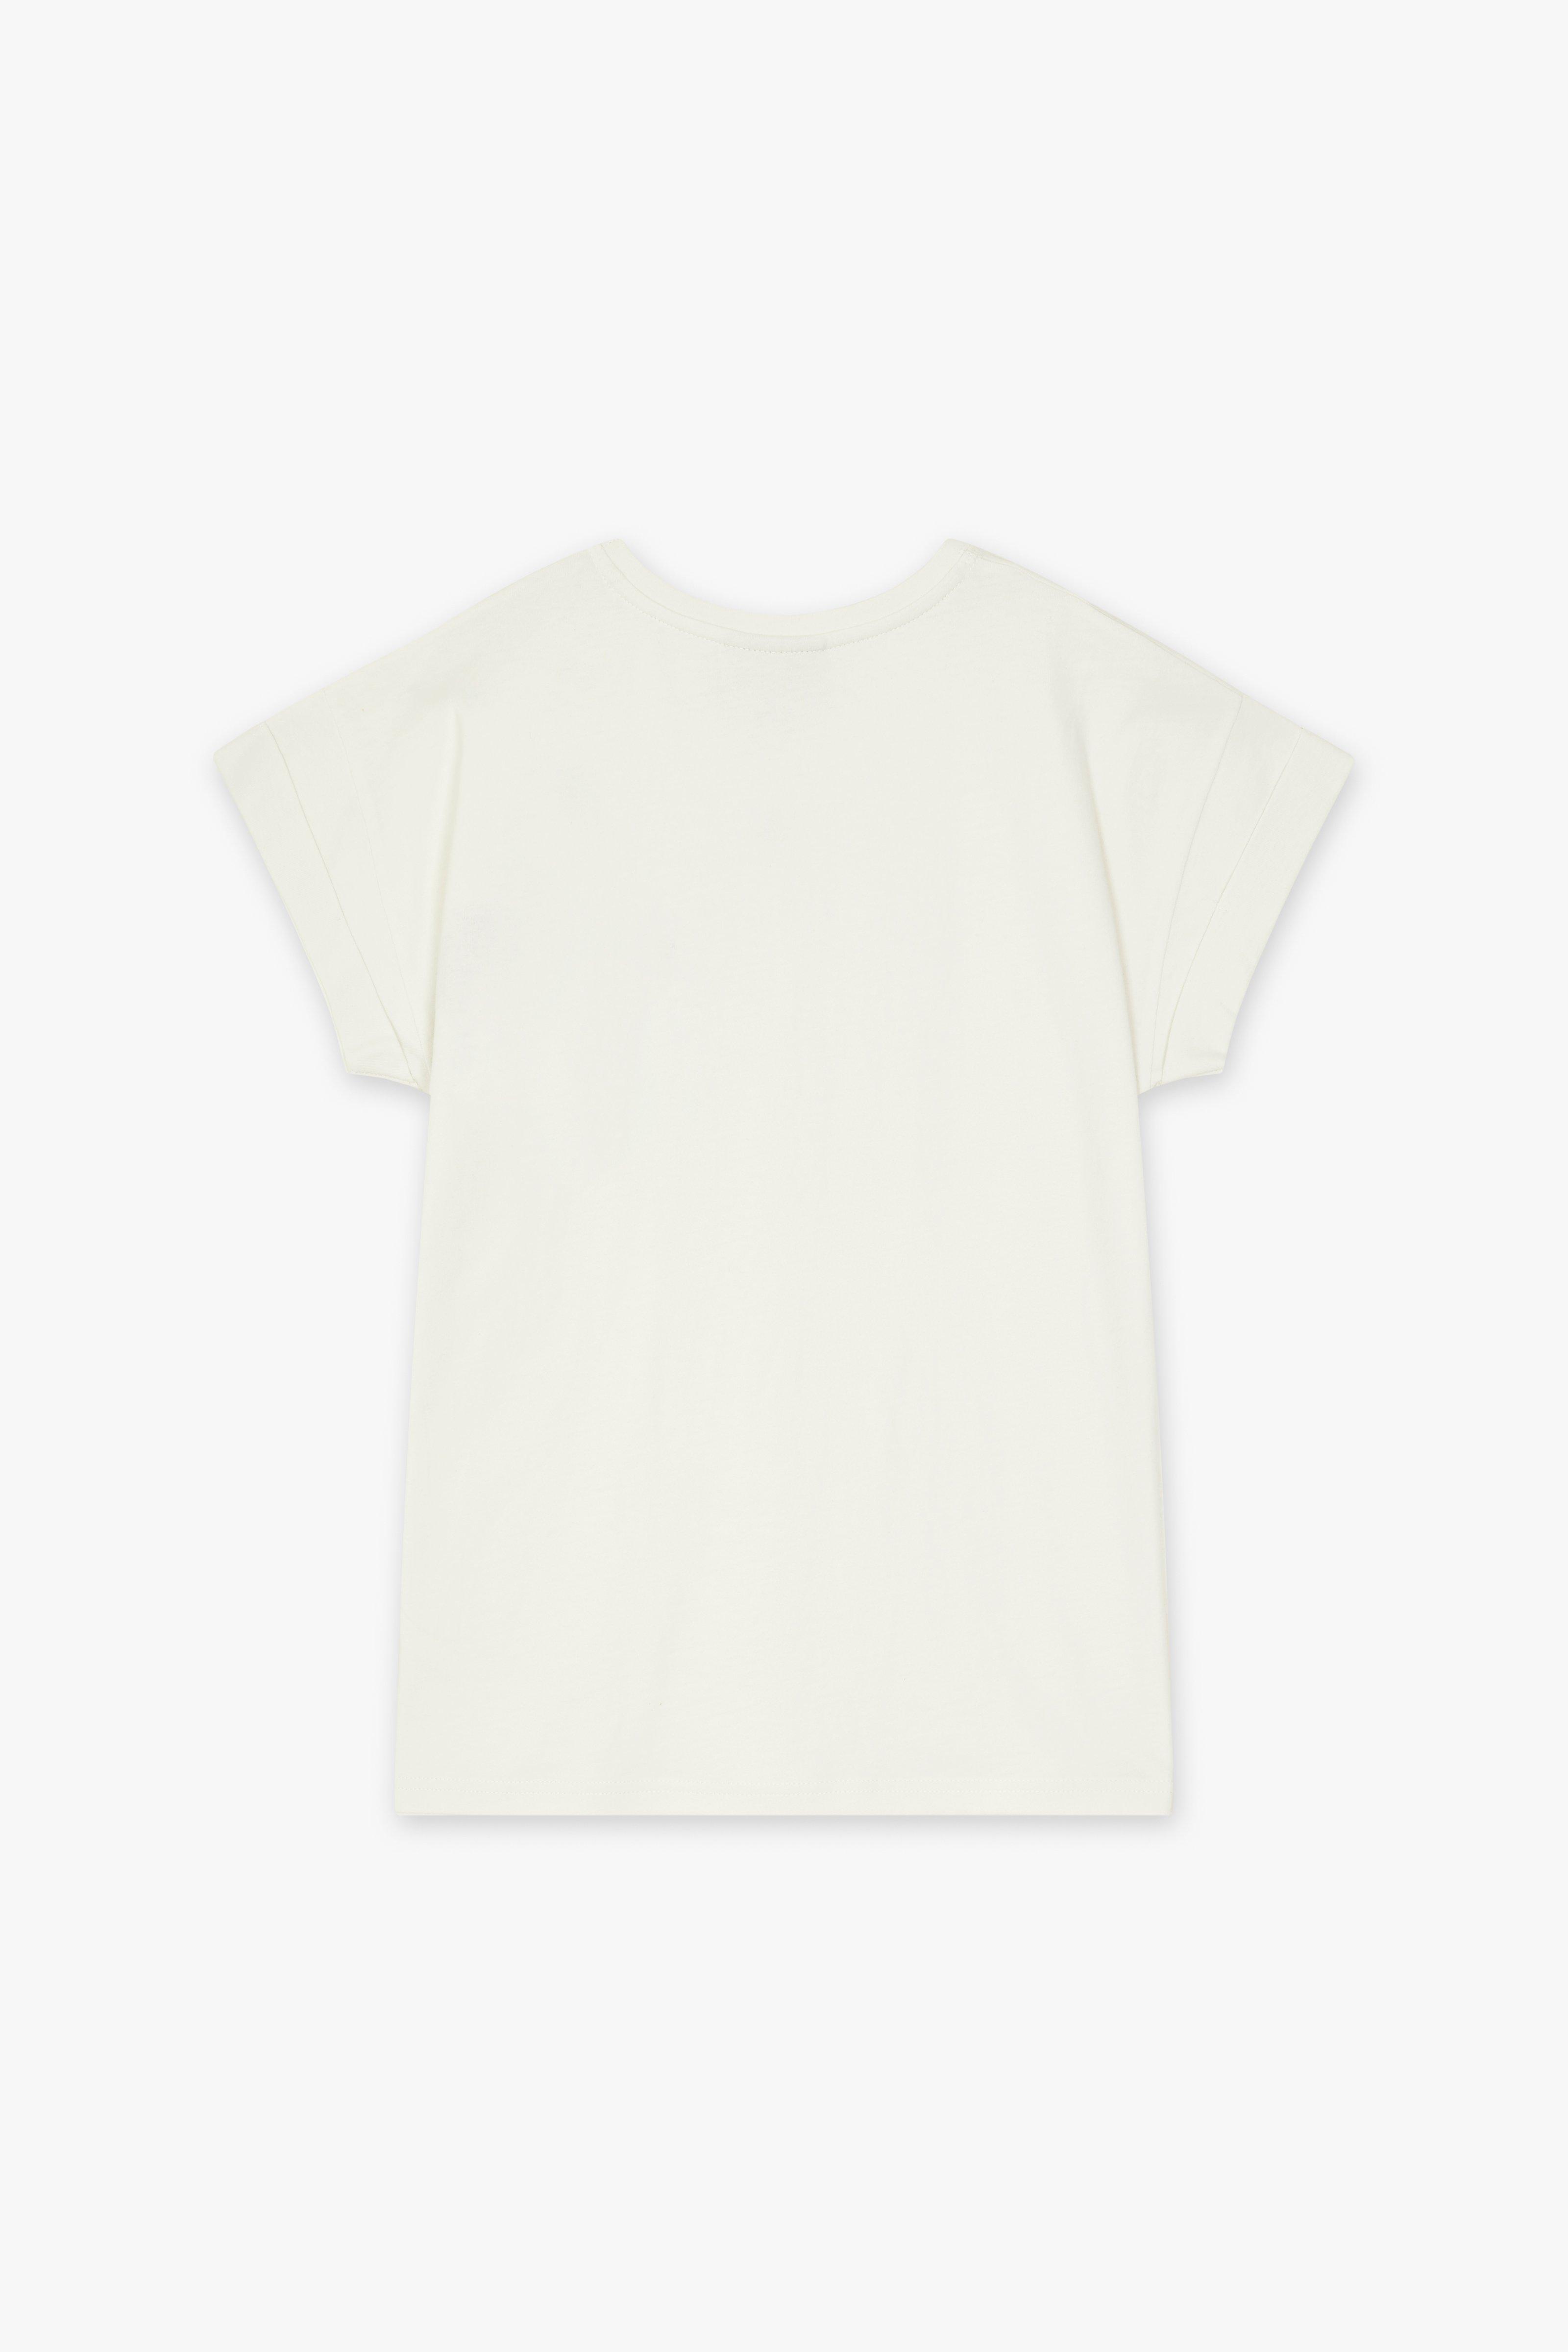 CKS Dames - JUNA - T-Shirt Kurzarm - Weiß